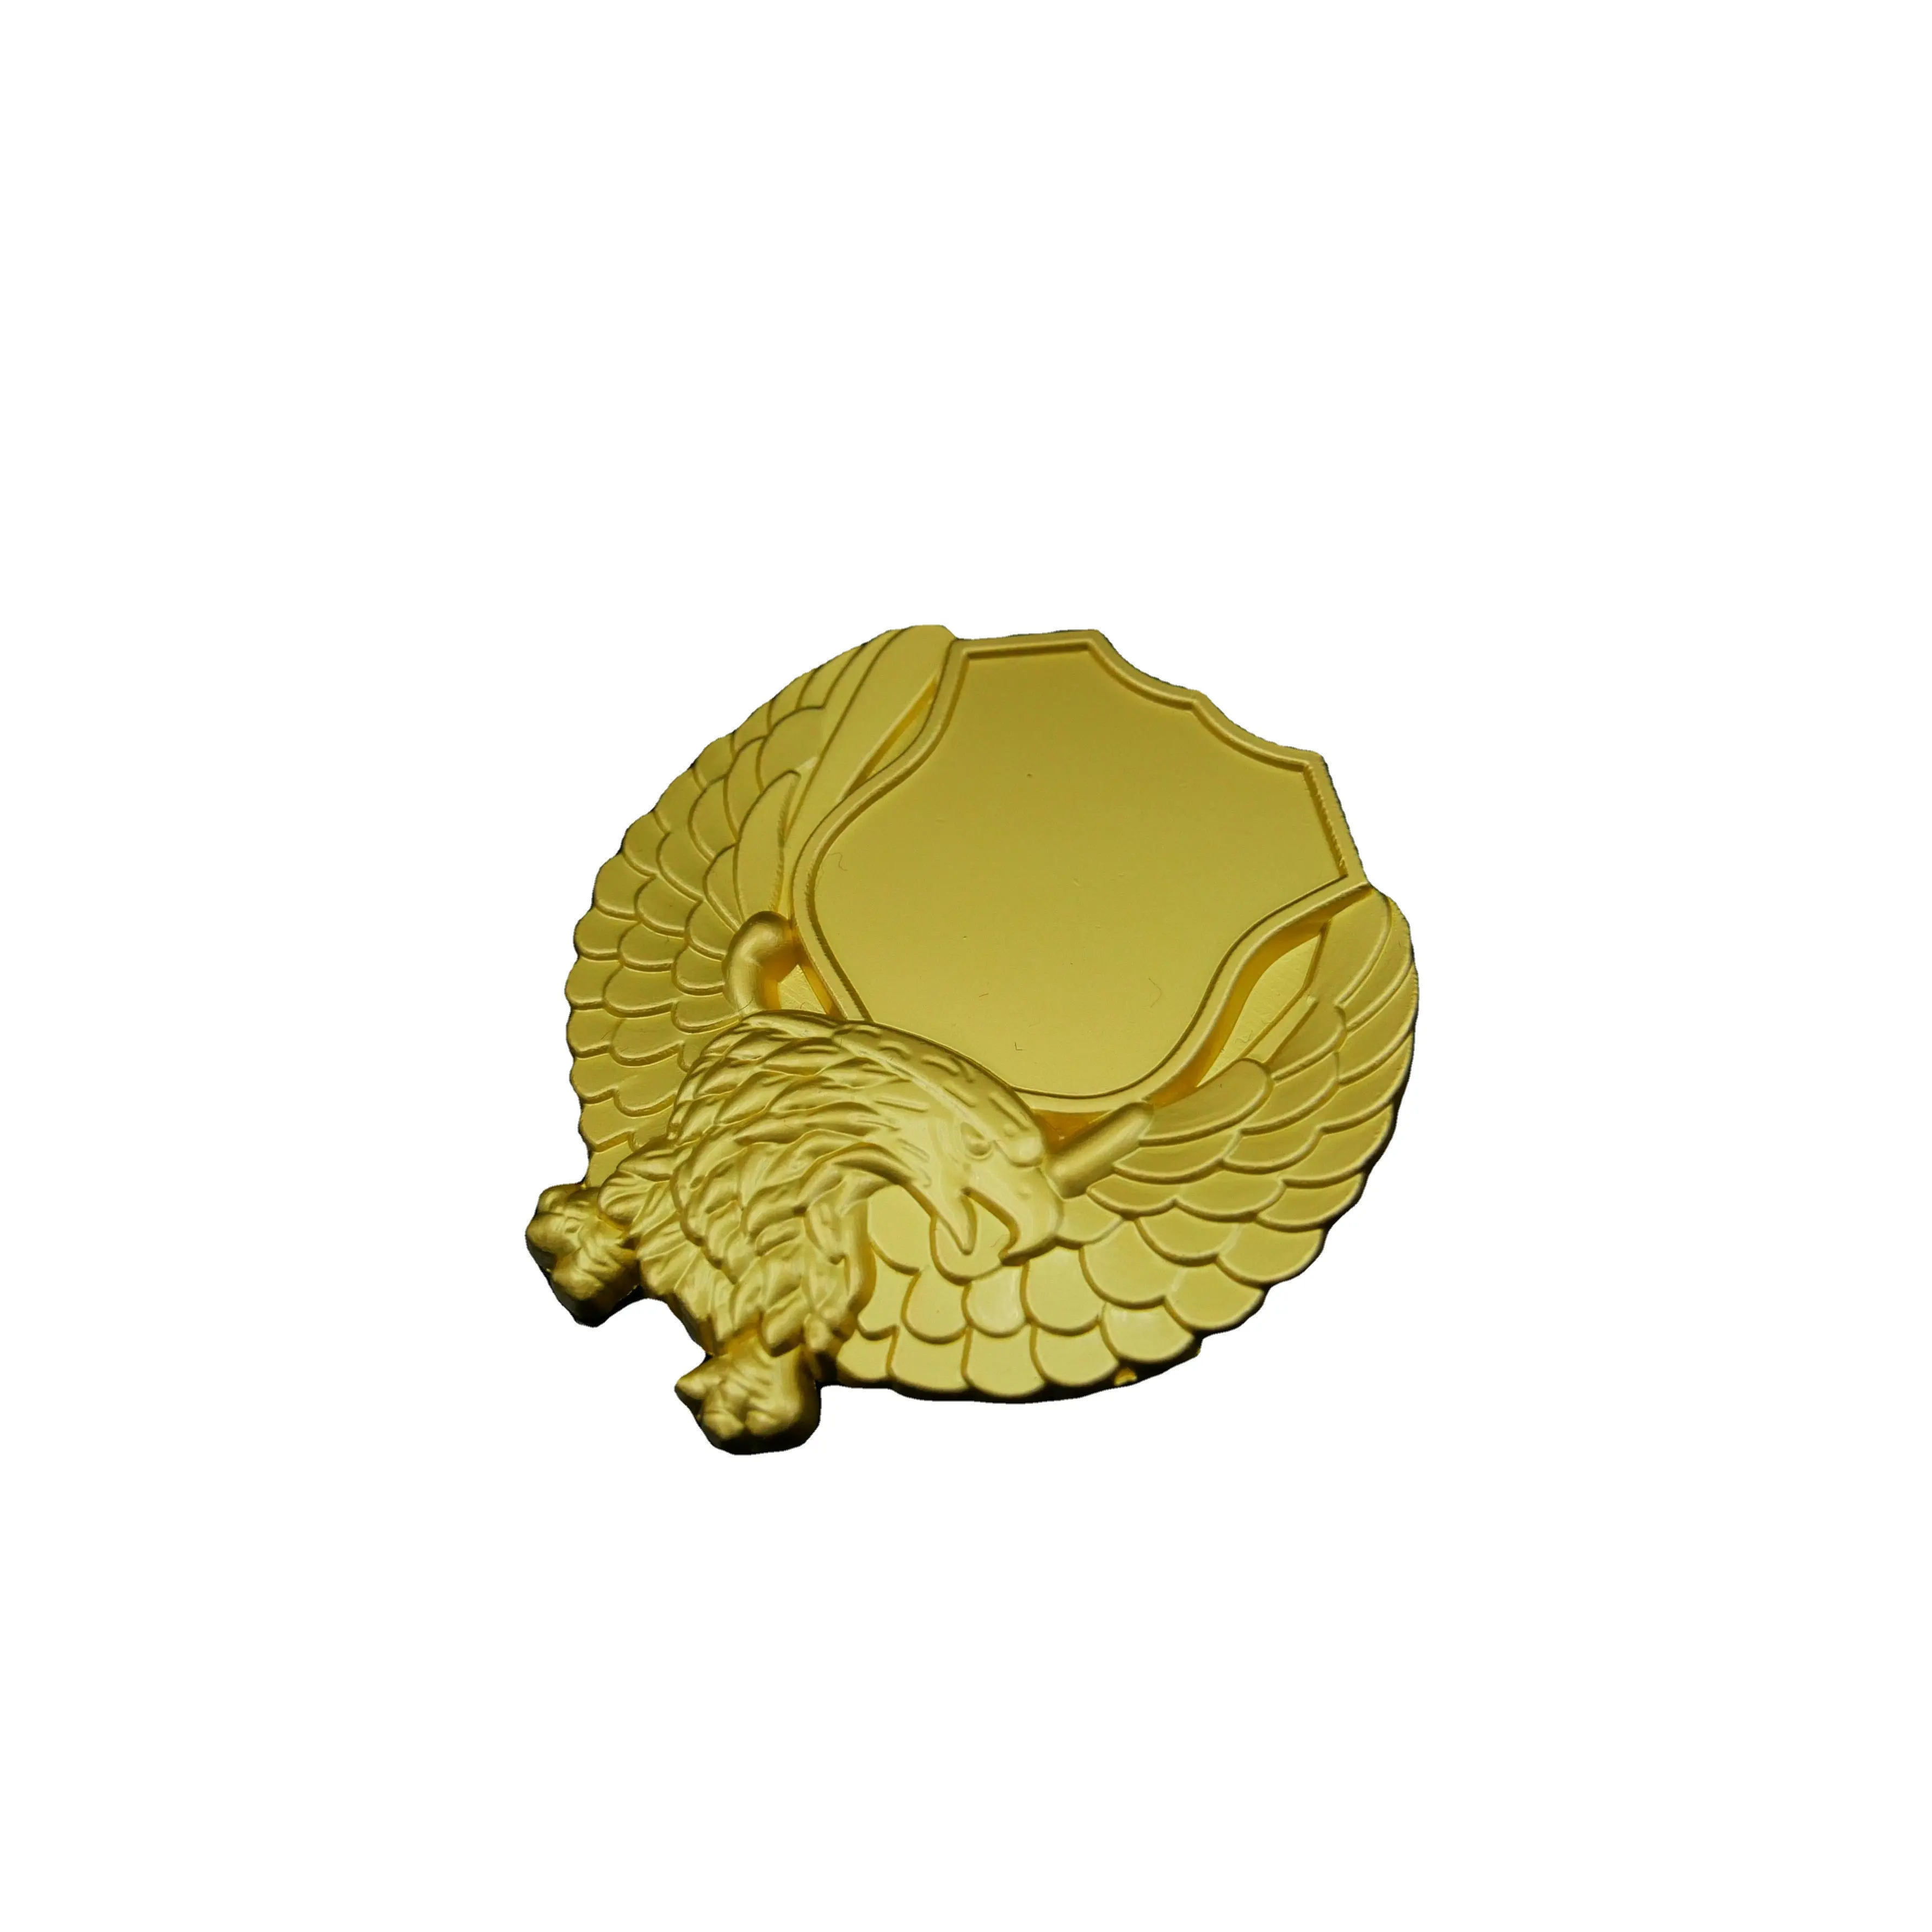 Metal 3D personalizado para artesanato com logotipo exclusivo, moeda de ouro e prata antiga personalizável, liga de zinco com desafio